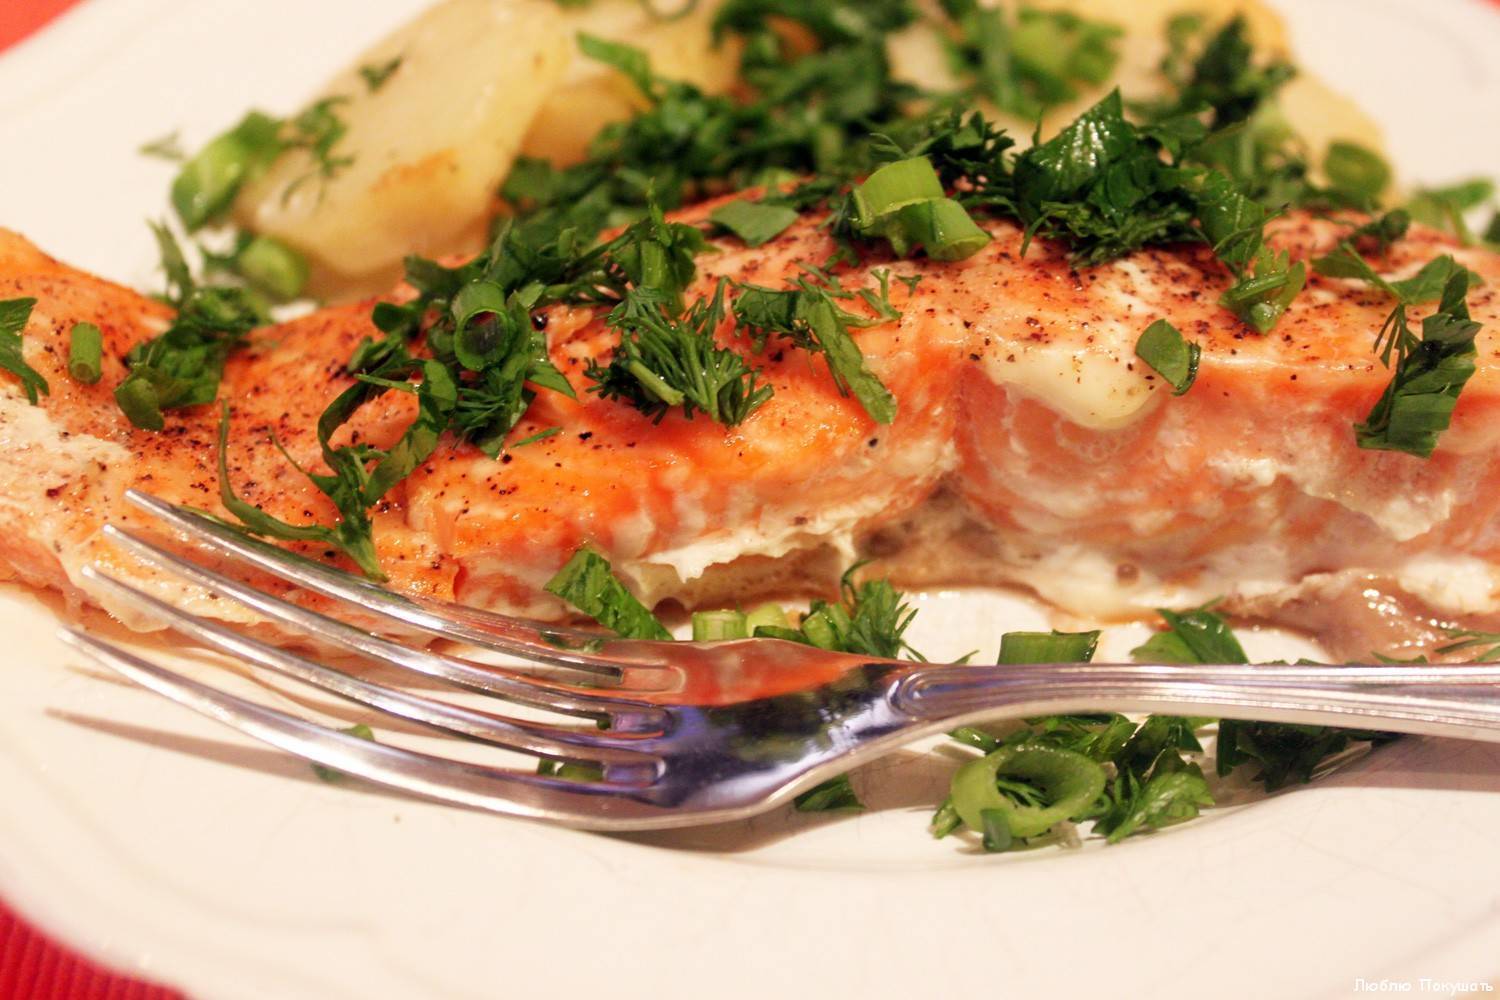 Рыба под маринадом из моркови и лука – классический рецепт на сковороде